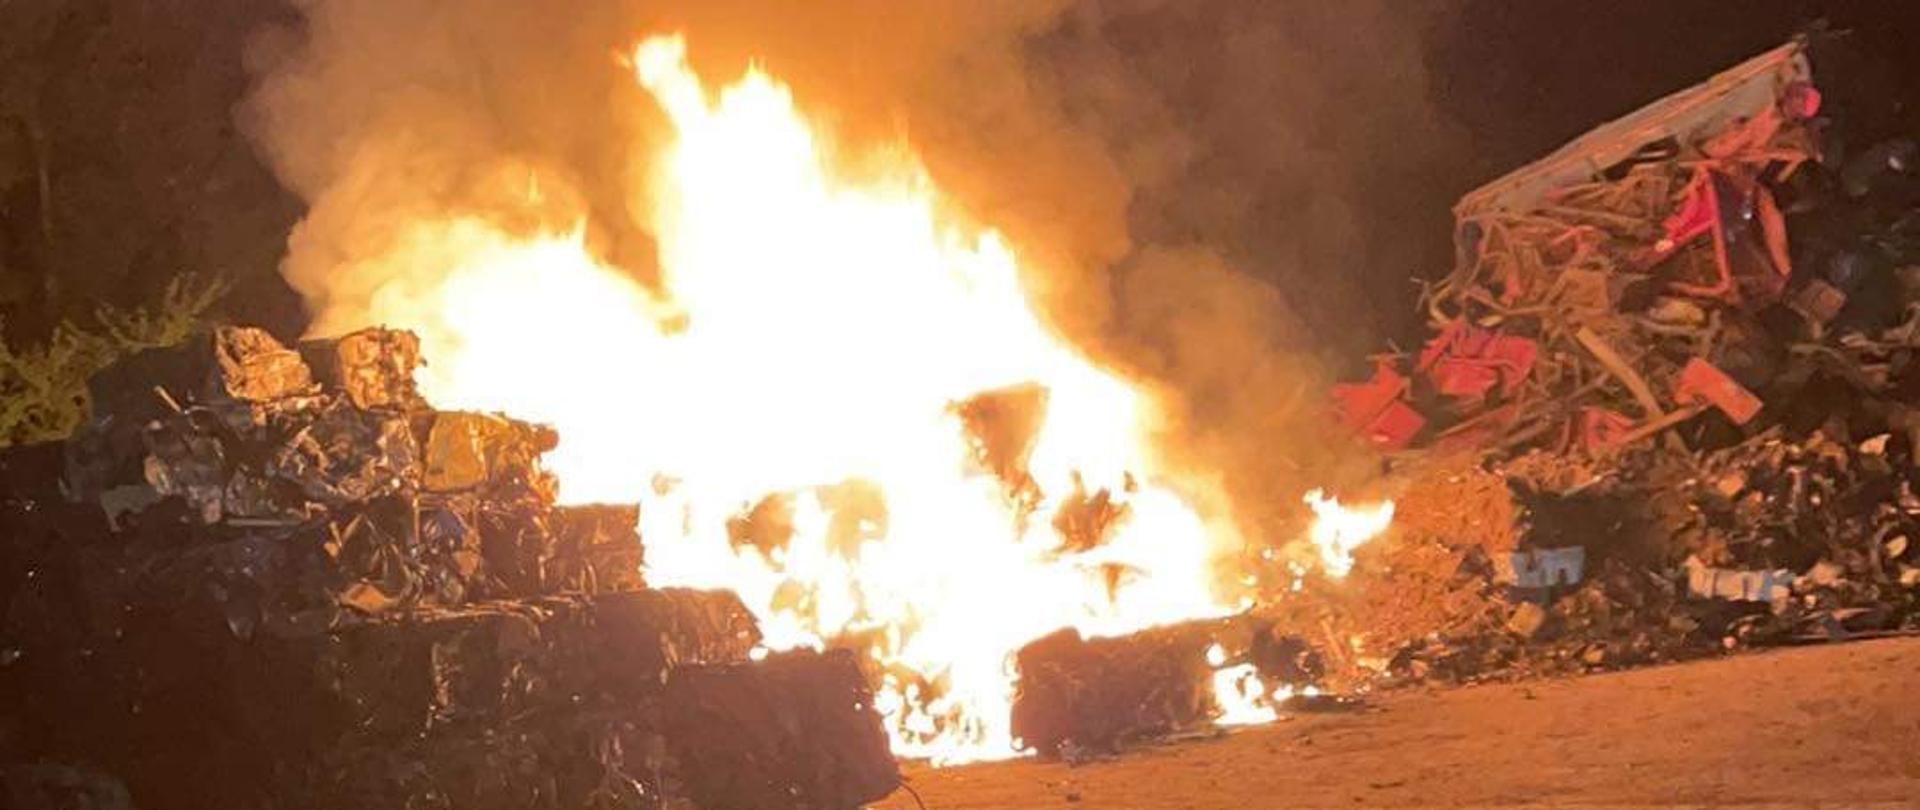 Zdjęcie przedstawia palące się sprasowane kostki samochodów osobowych na złomowisku. Pora nocna. 